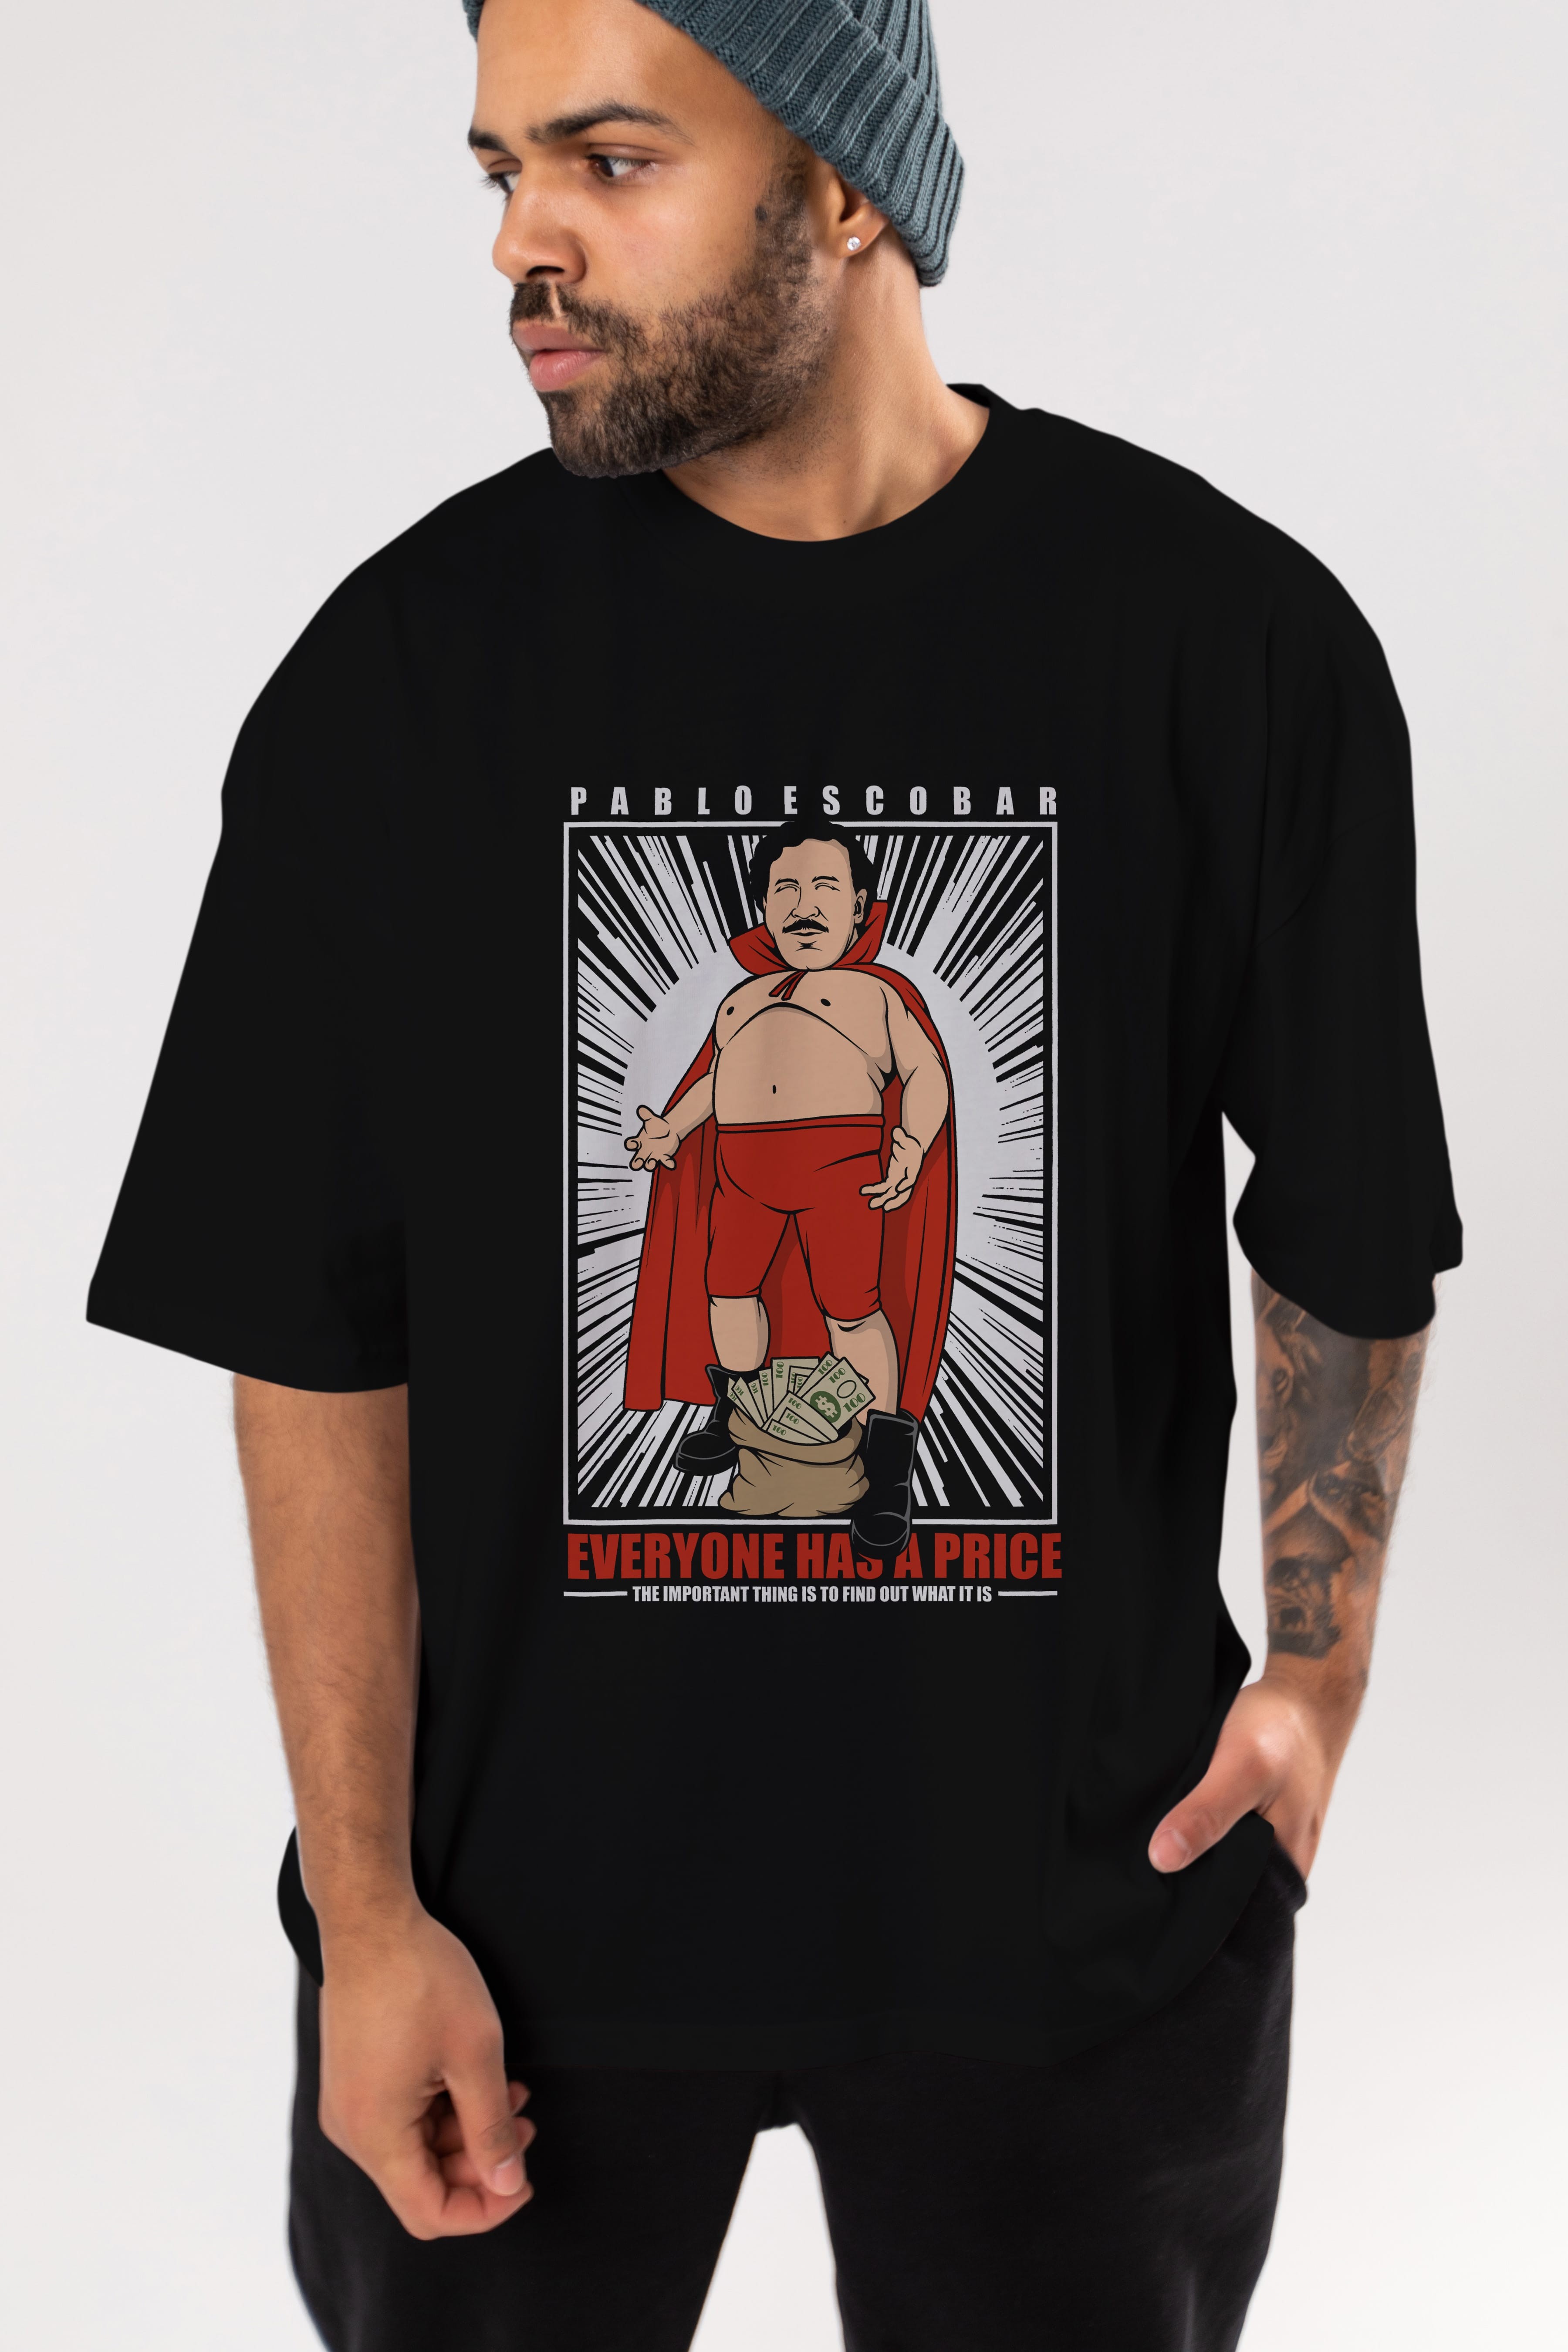 Pablo Escobar Luchador Ön Baskılı Oversize t-shirt Erkek Kadın Unisex %100 Pamuk tişort